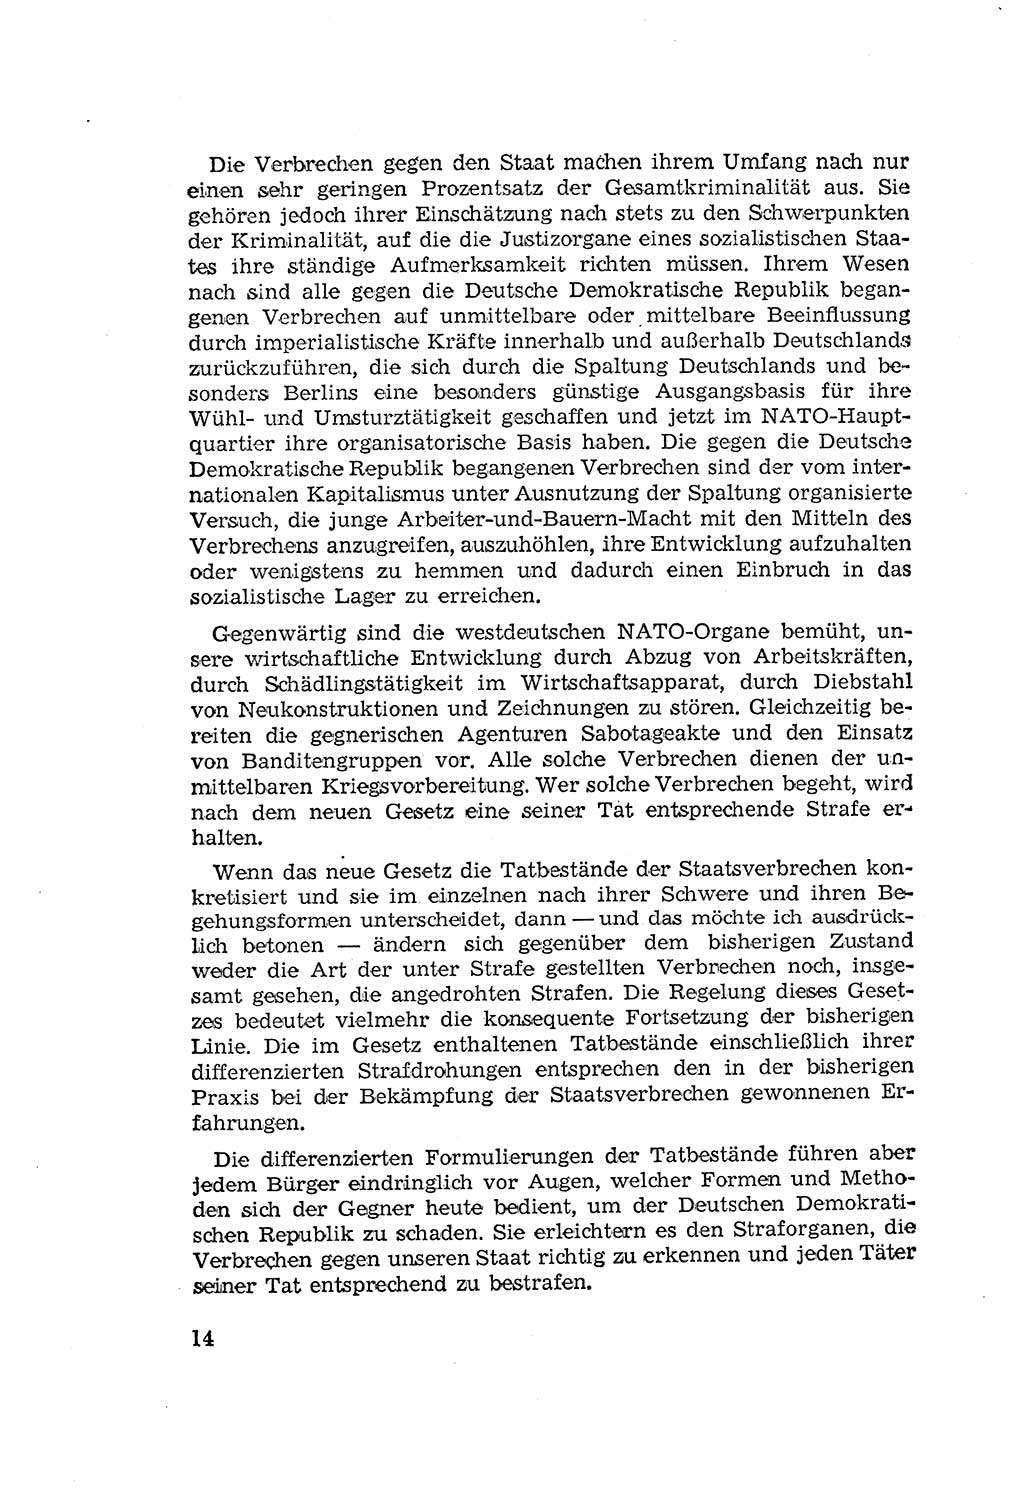 Zum Erlaß des Gesetzes zur Ergänzung des Strafgesetzbuches (StGB), Strafergänzungsgesetz (StEG) [Deutsche Demokratische Republik (DDR)] 1957, Seite 14 (StGB StEG DDR 1957, S. 14)